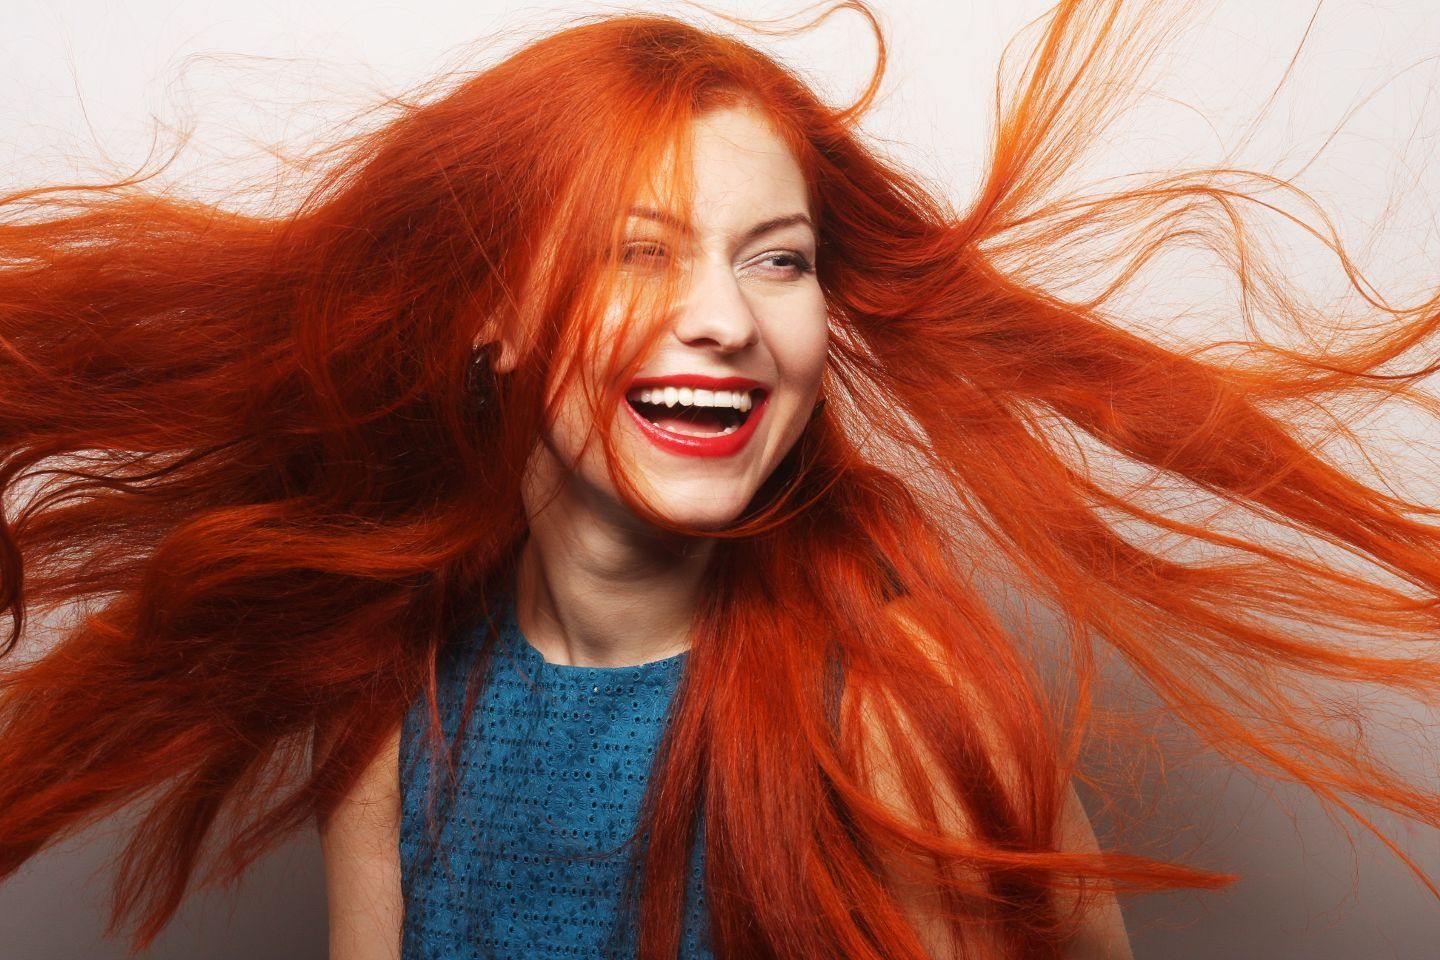 خمسة مخاطر صحية مرتبطة بأصحاب الشعر الأحمر